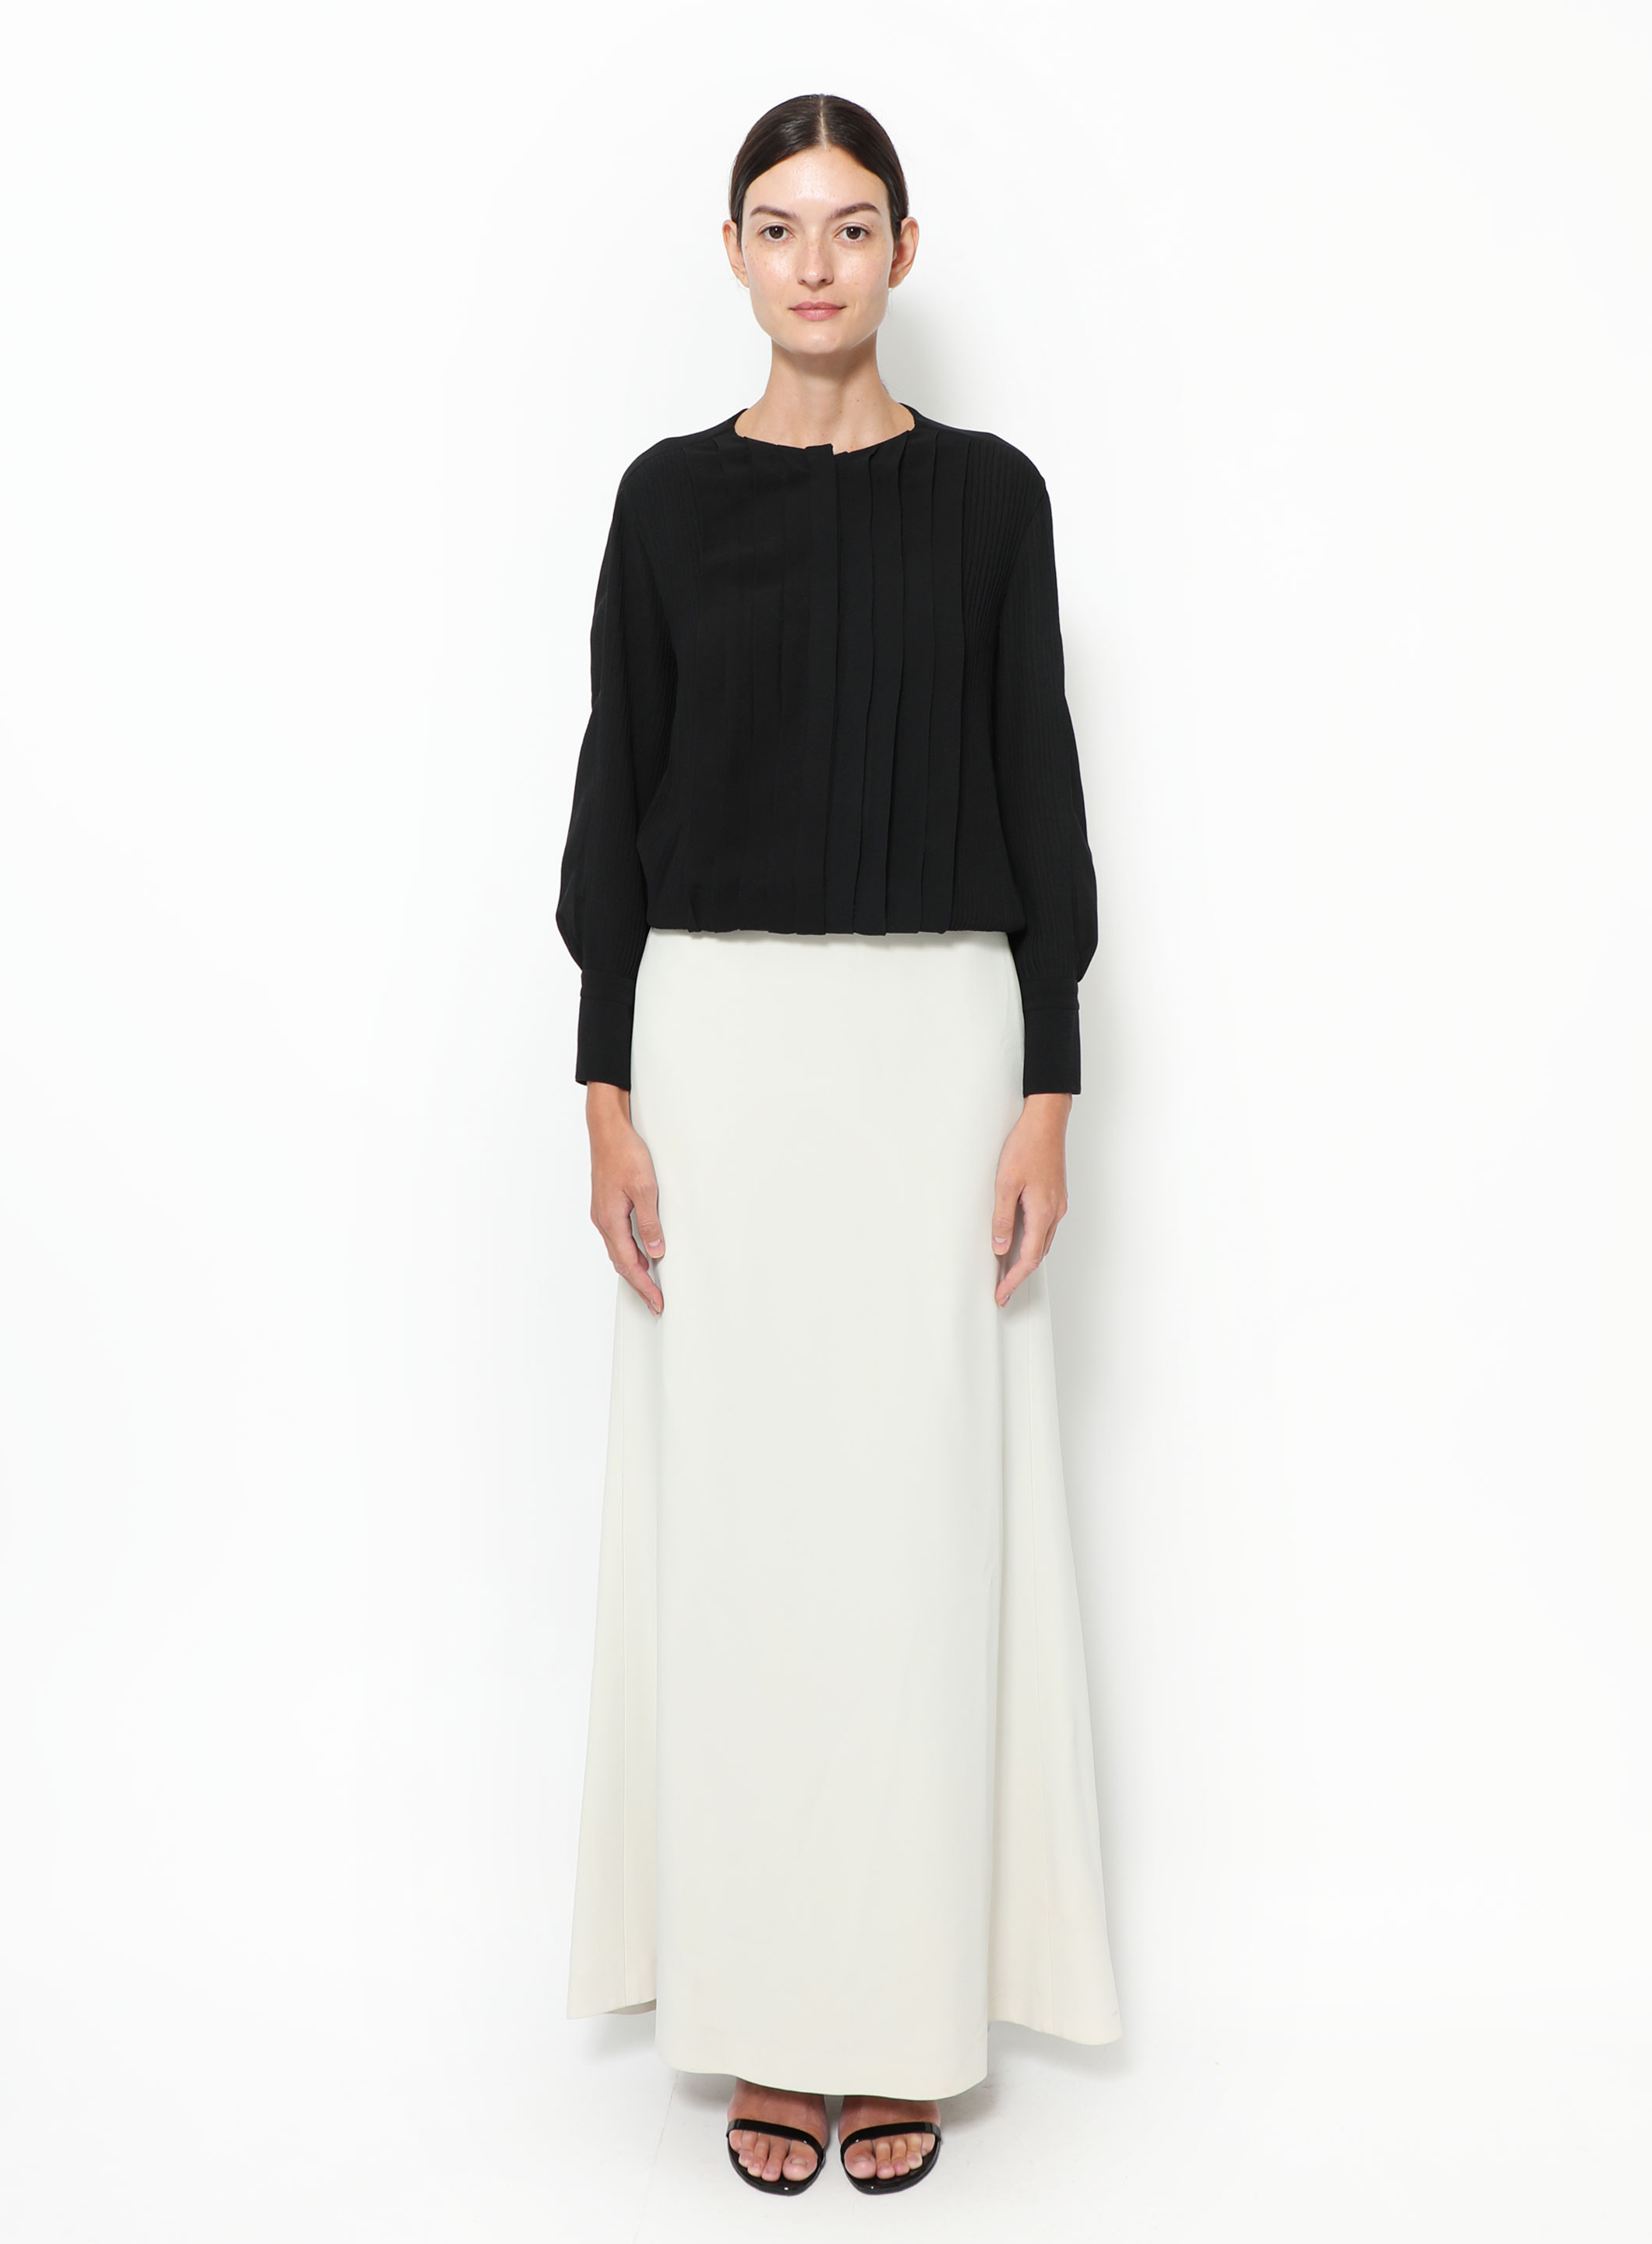 Louis Vuitton - Authenticated Skirt - Cotton Black Plain for Women, Never Worn